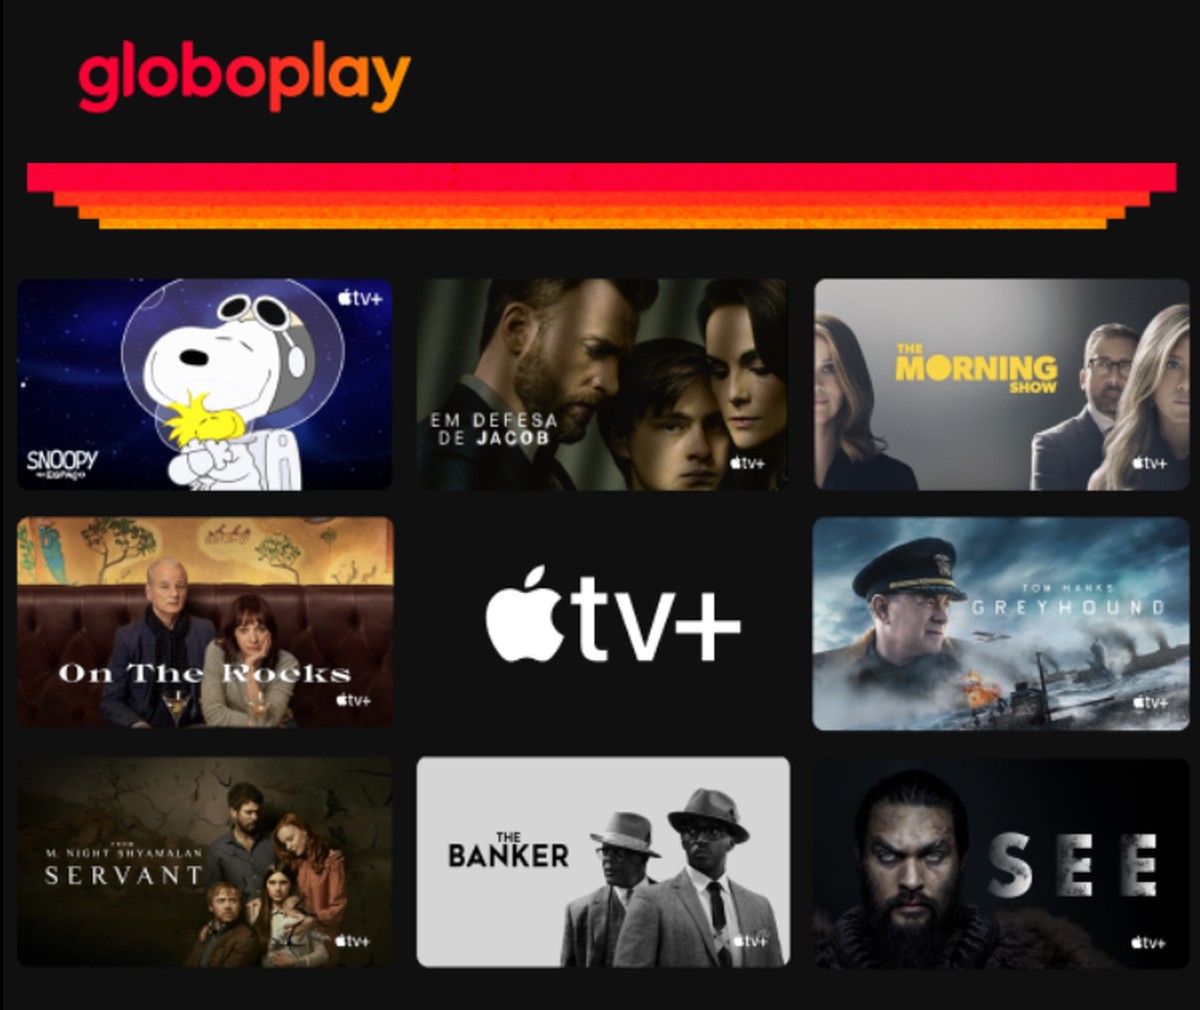 Promoção: assine o EXTRA digital e ganhe acesso grátis ao Globoplay por um  mês - Promoções - Extra Online